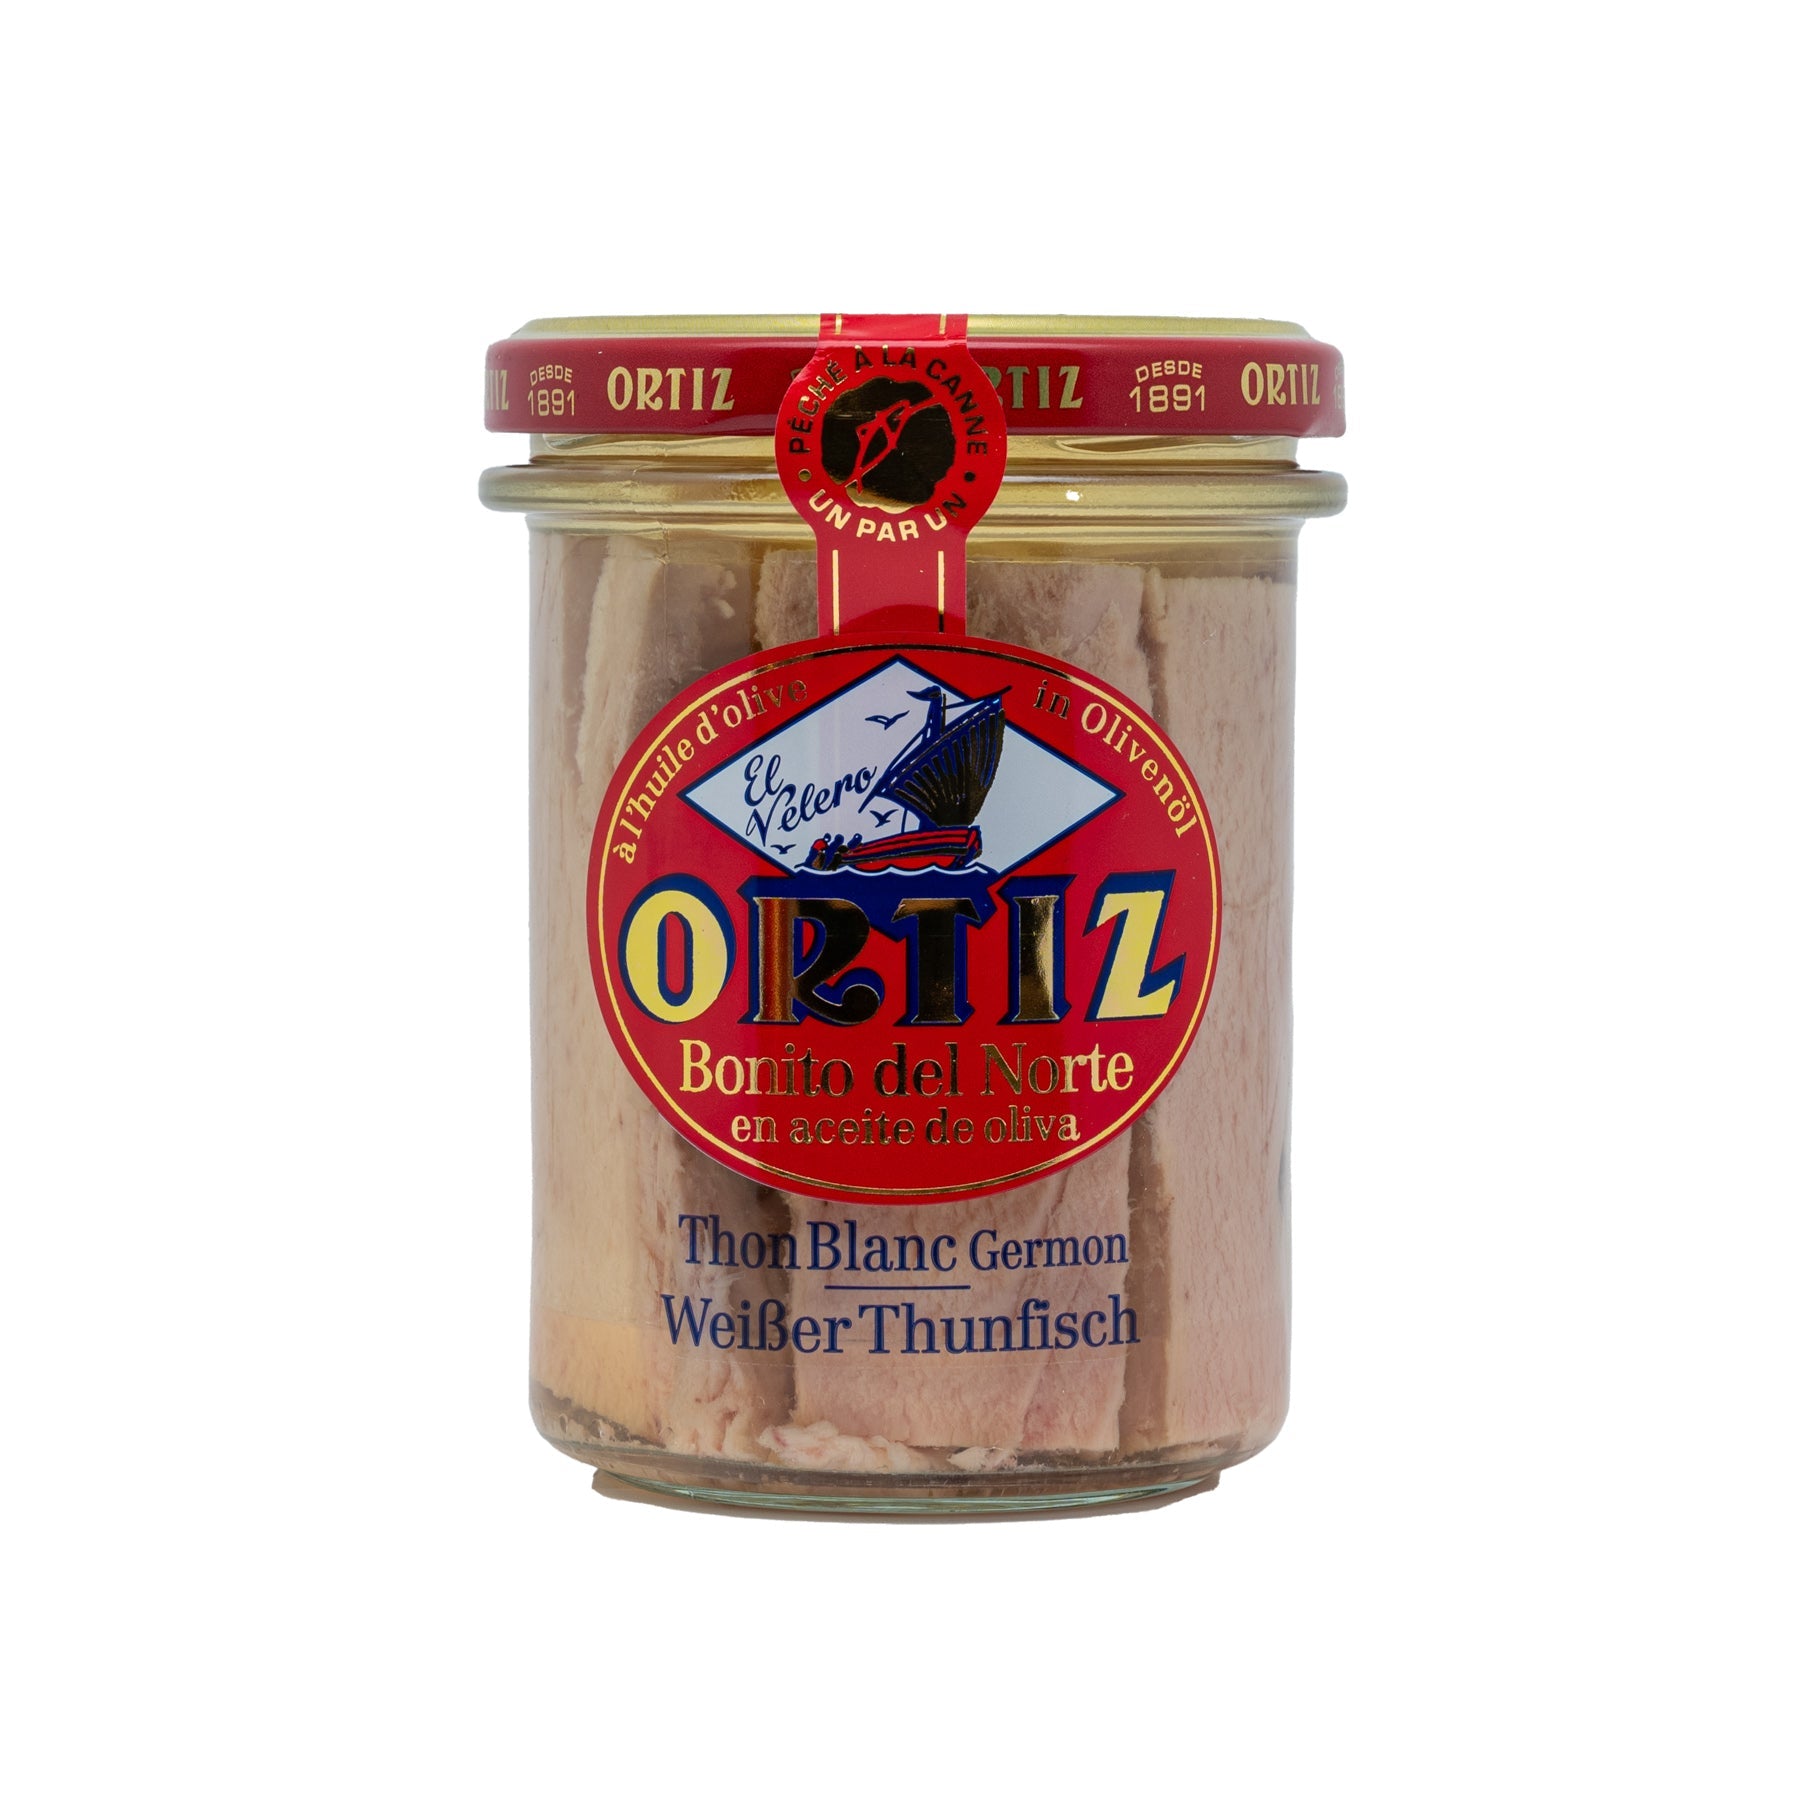 Weißer Thunfisch in Olivenöl im Glas "Bonito del Norte" (220g) - Gourmet Markt - Ortiz